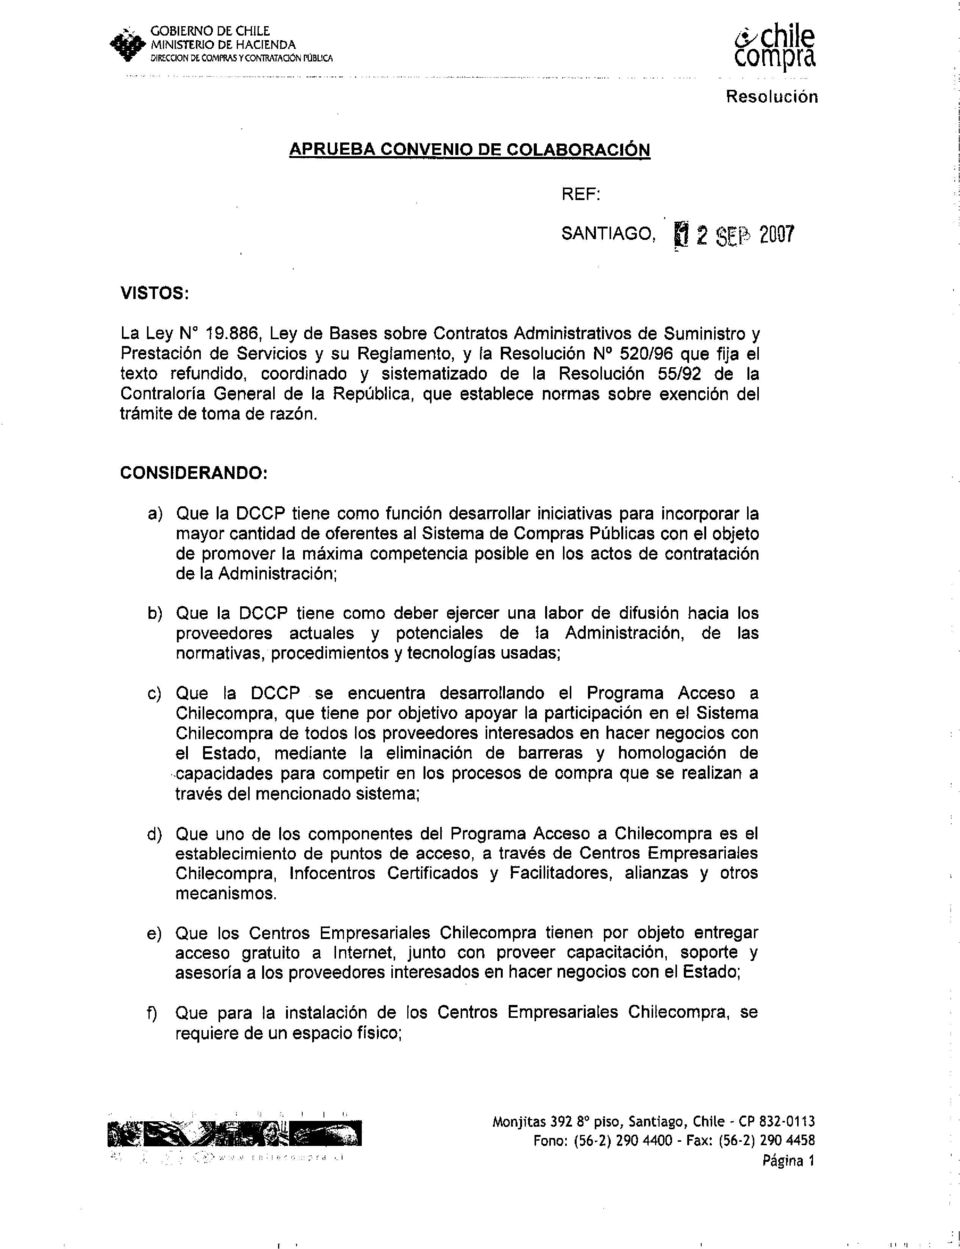 Resolución 55/92 de la Contraloría General de la República, que establece normas sobre exención del trámite de toma de razón.